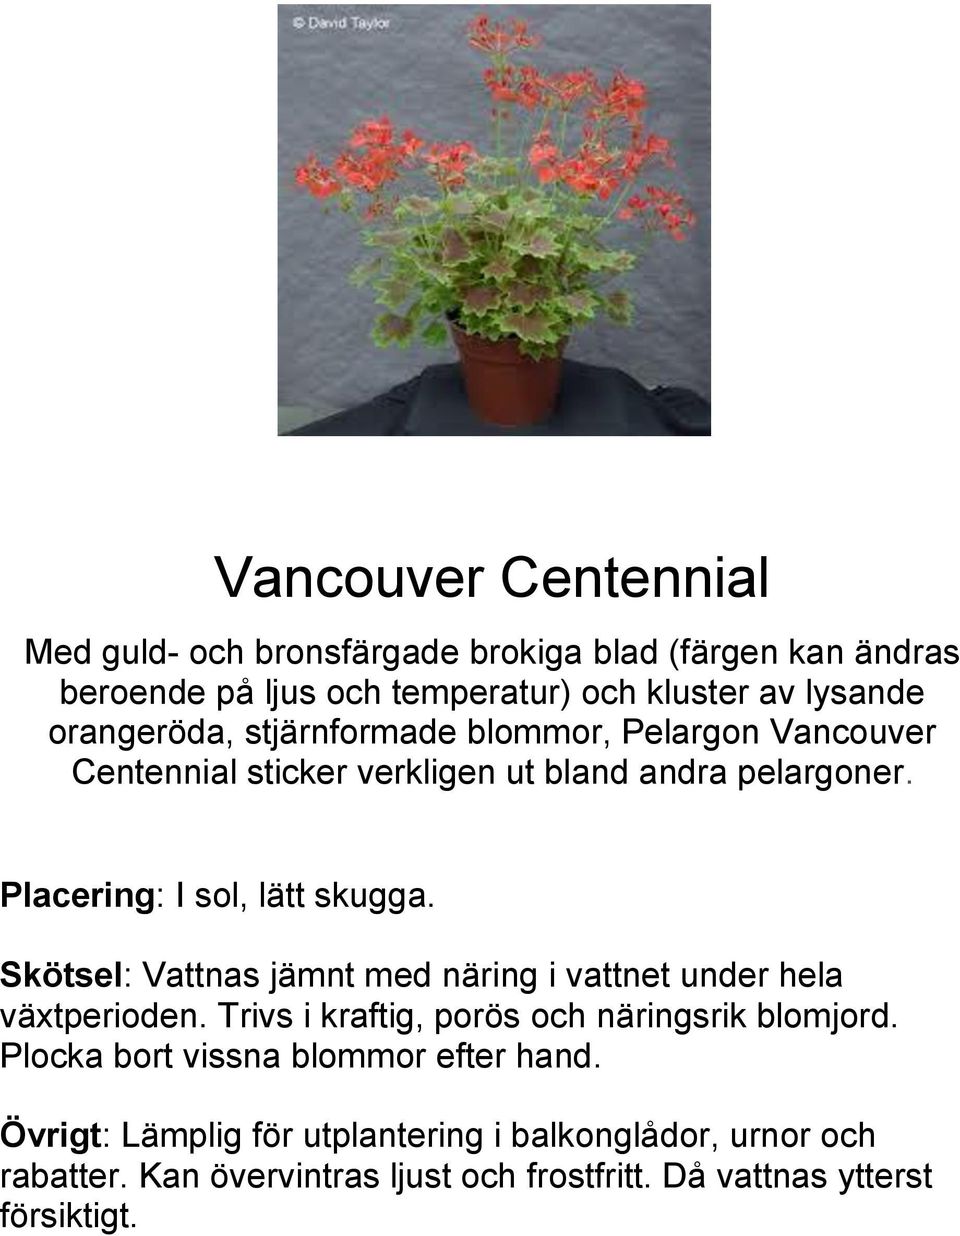 Pelargon Vancouver Centennial sticker verkligen ut bland andra pelargoner.